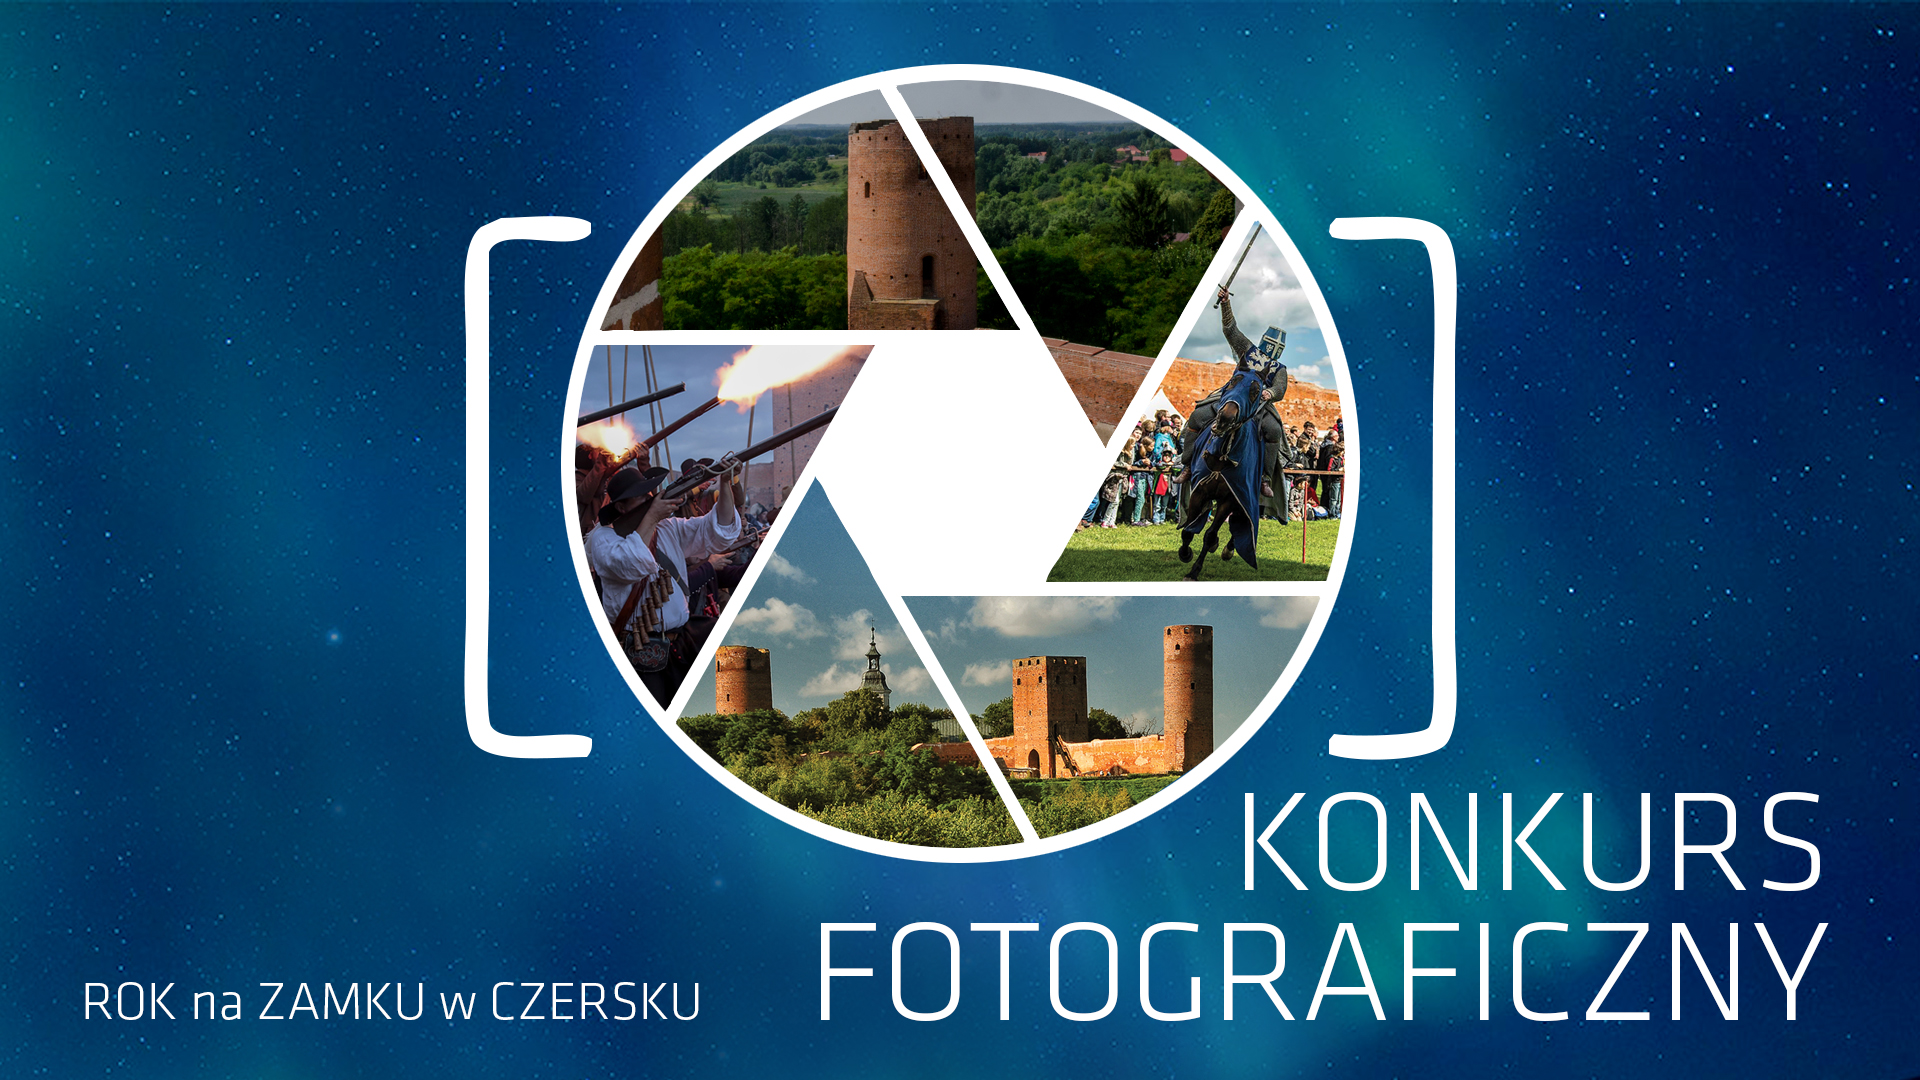 Rok na zamku w Czersku - konkurs fotograficzny